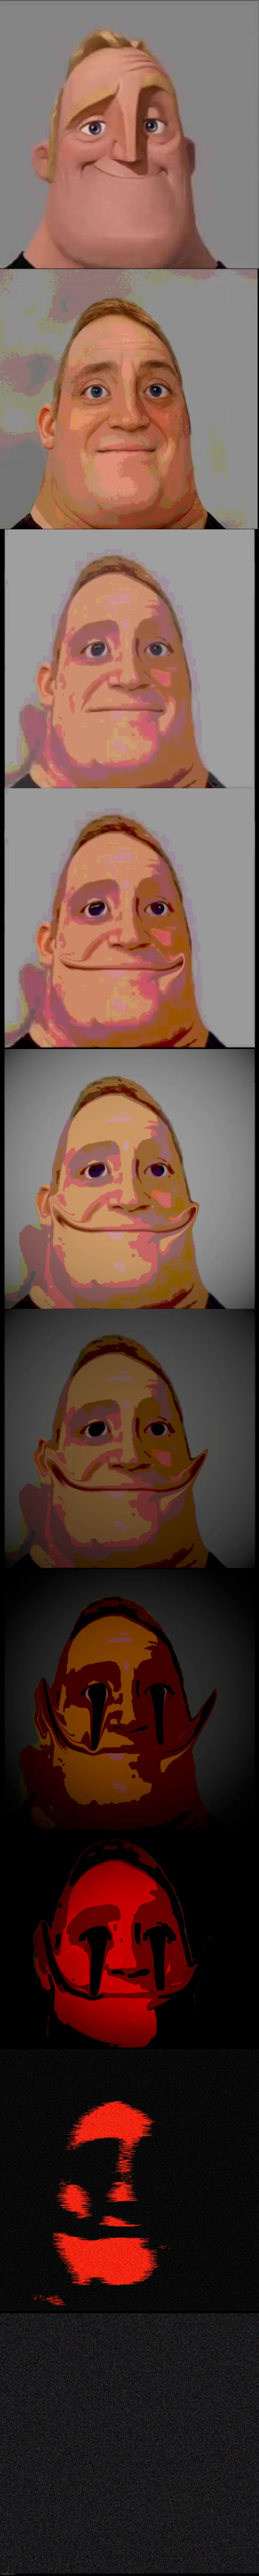 Happy vs Dark Mr. Incredible Meme Generator - Imgflip